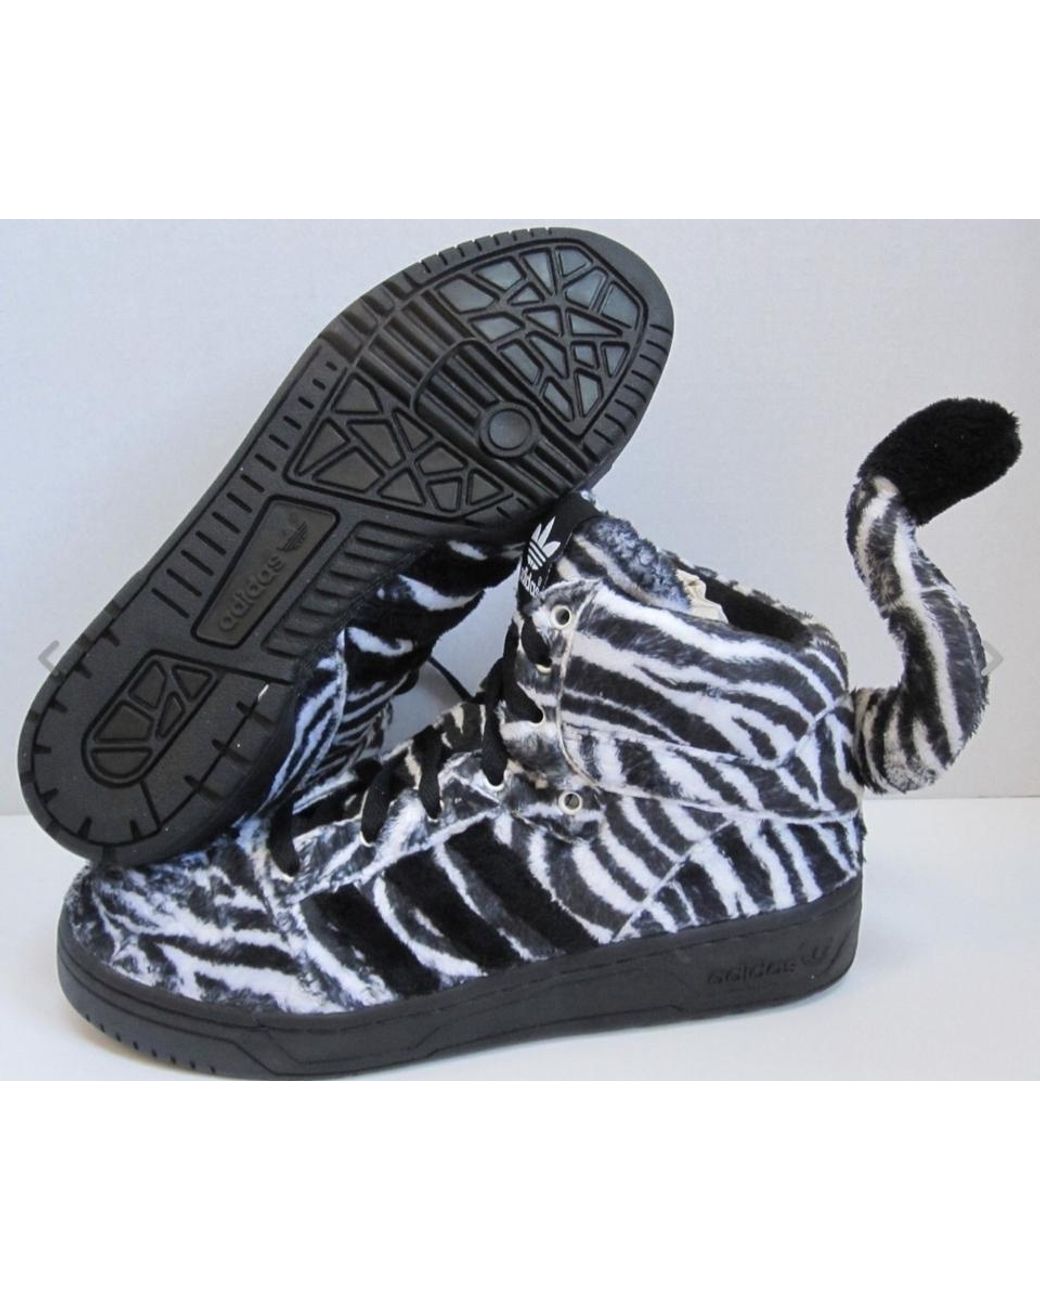 jeremy scott tiger shoes